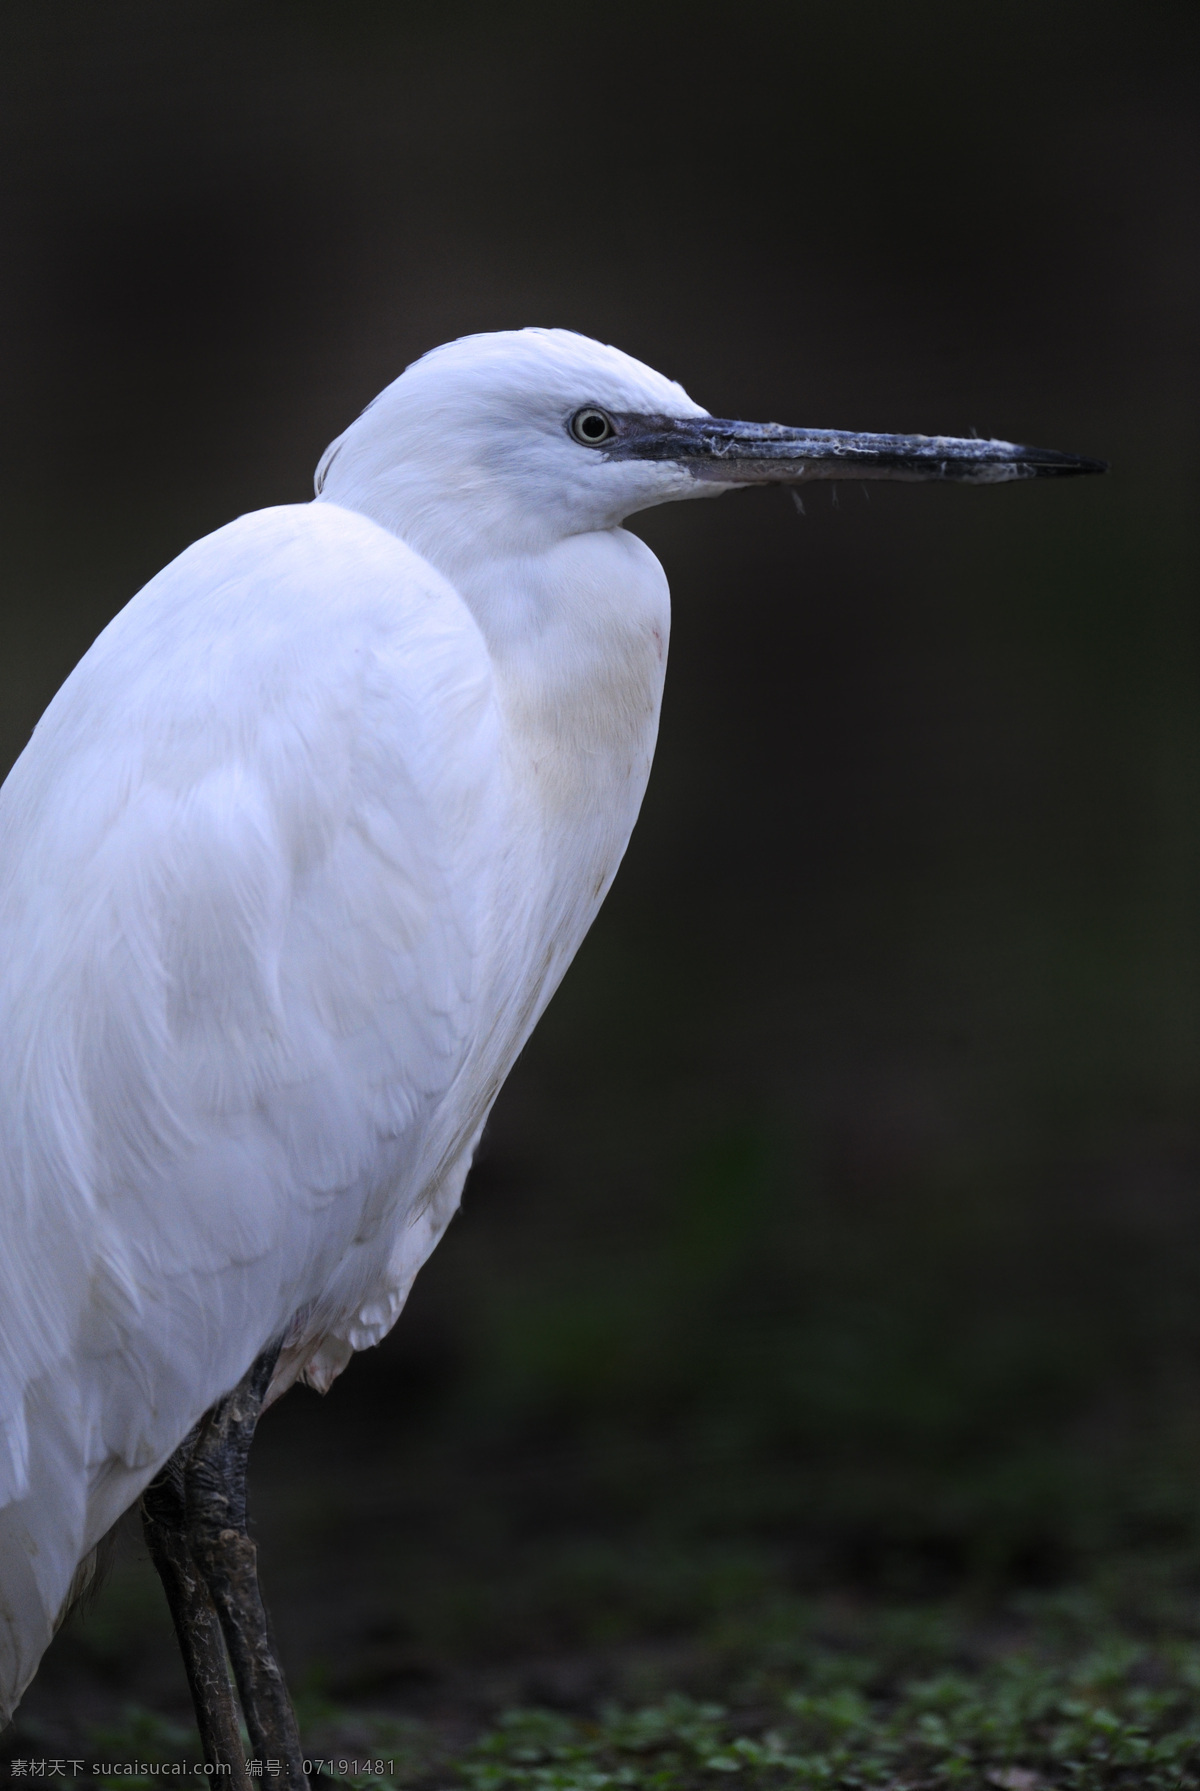 白色 长嘴 小鸟 空中飞鸟 鸟类 禽类 动物 野生动物 动物世界 动物摄影 生物世界